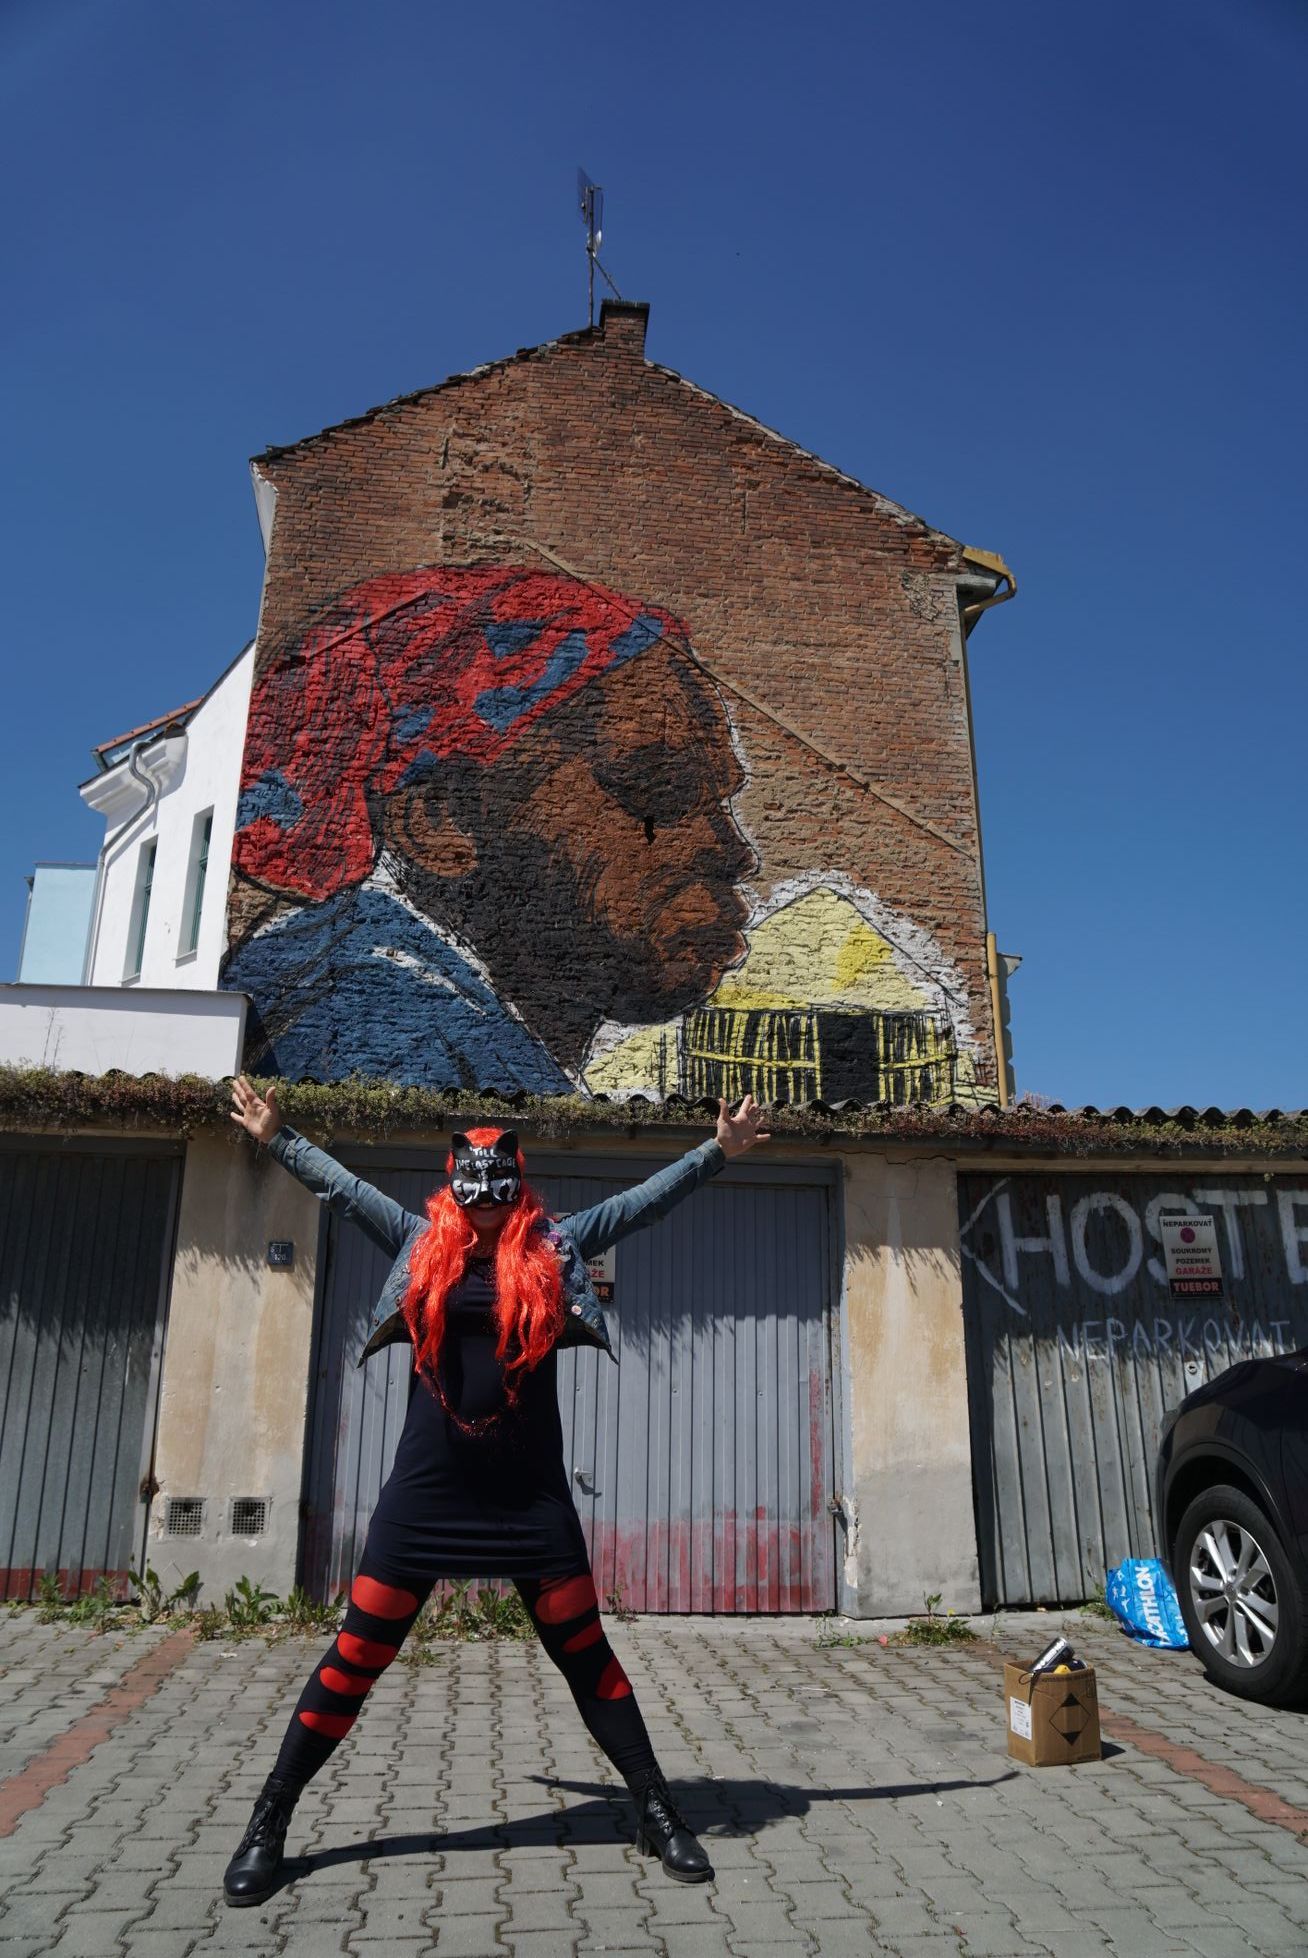 Výtvarnice Toy_Box vytvořila mural / graffiti v Plzni - Tváře klimatické změny, klima, Člověk v tísni